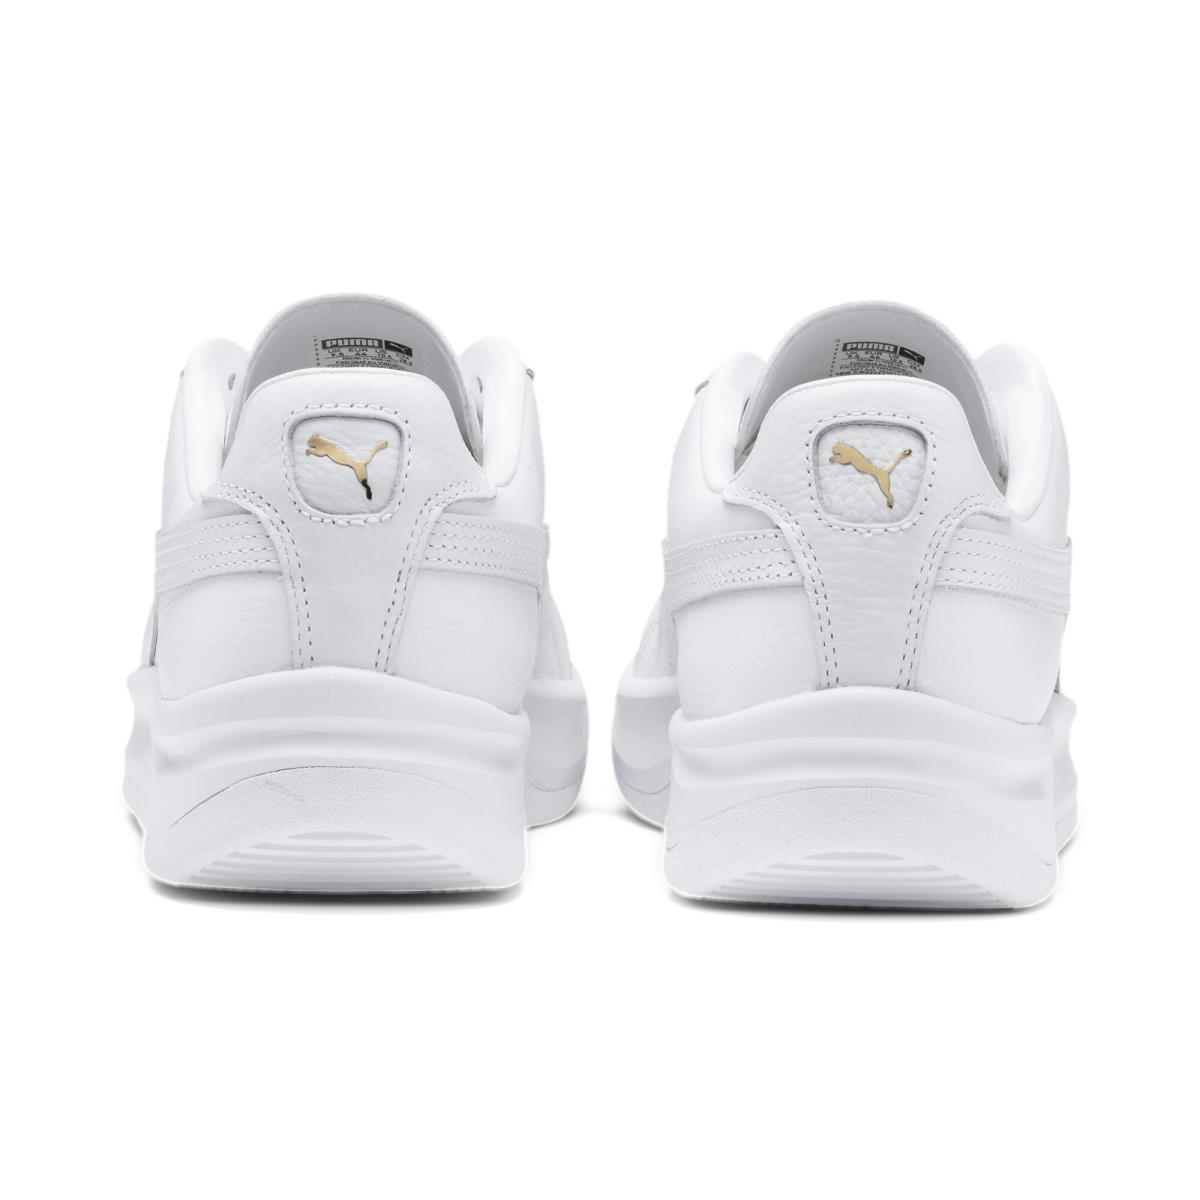 Puma shoes Sport Classics - White - White/White 2